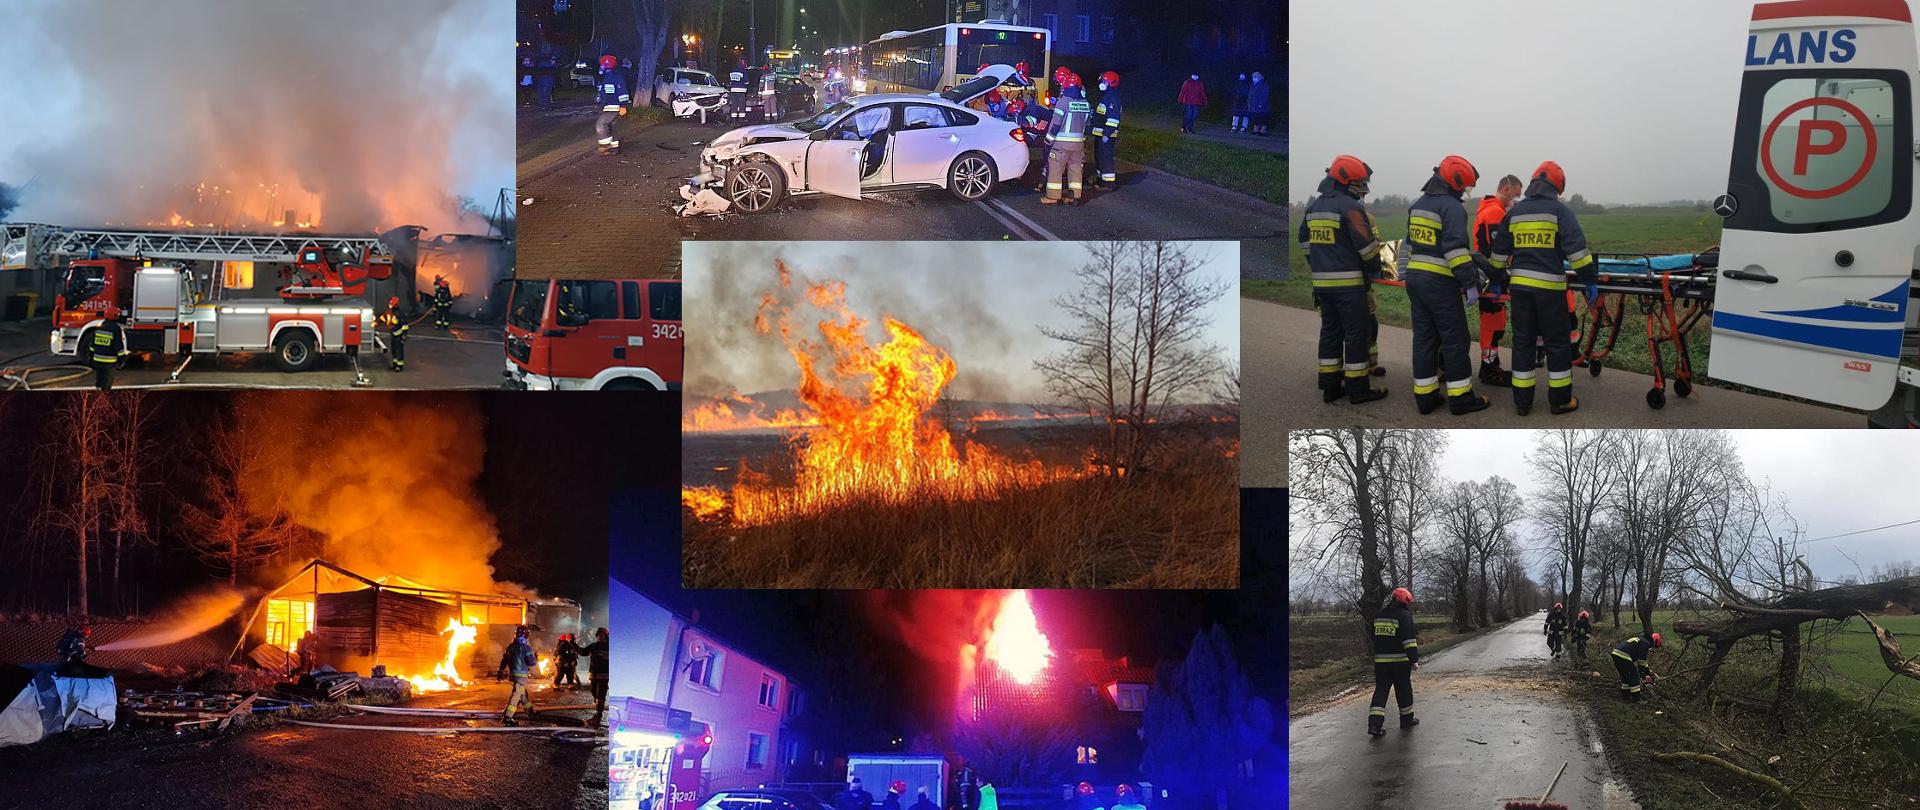 Kolaż stworzony z różnych zdjęć, które stanowiły ilustracje do artykułów z interwencji straży w 2020 roku. Głównie zdjęcia przedstawiające pożary budynków, rozbite w wypadkach samochody i połamane drzewa.